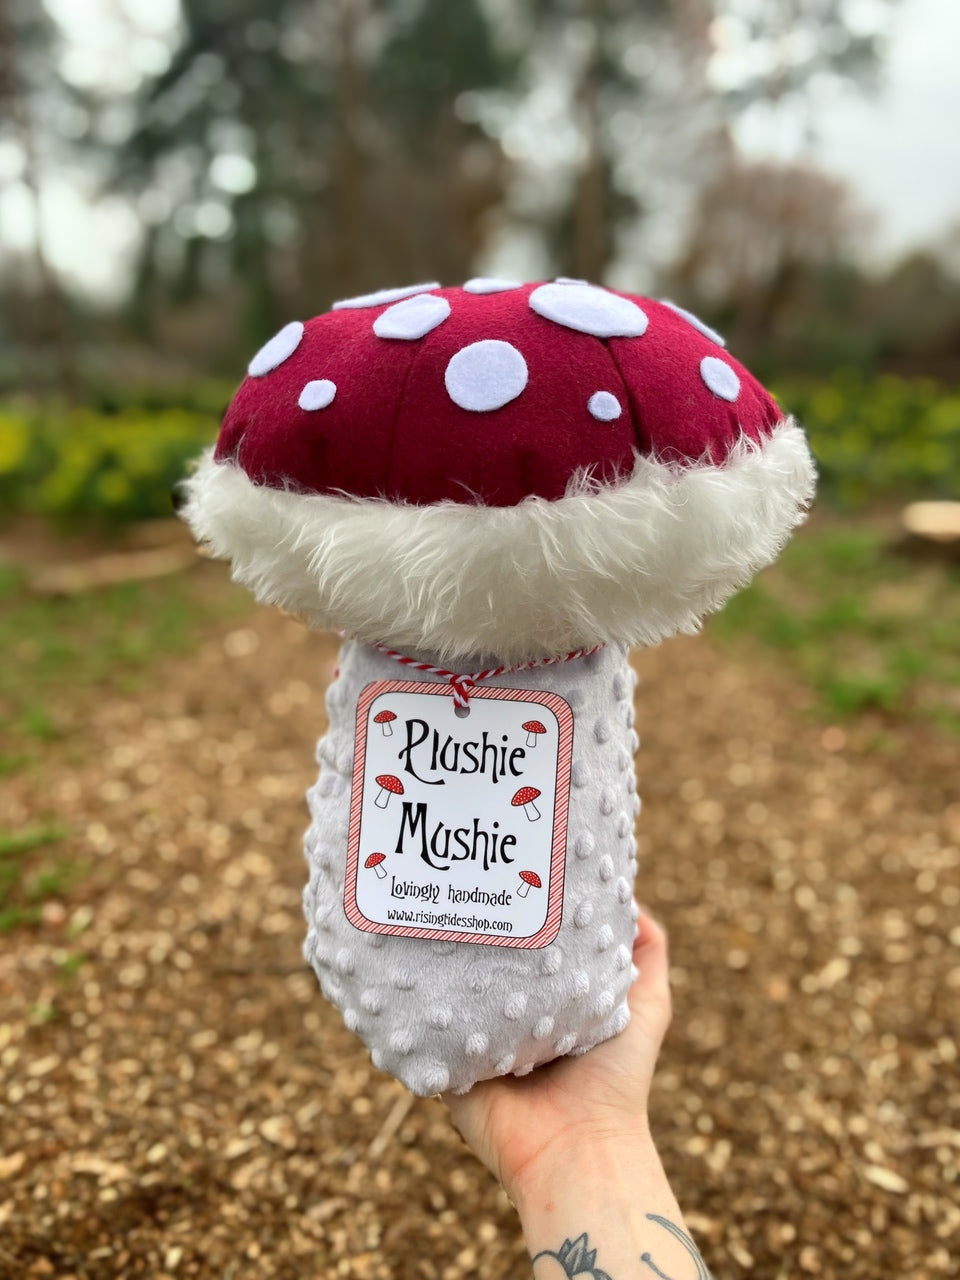 Giant Plushie Mushie - Handmade Plush Mushroom